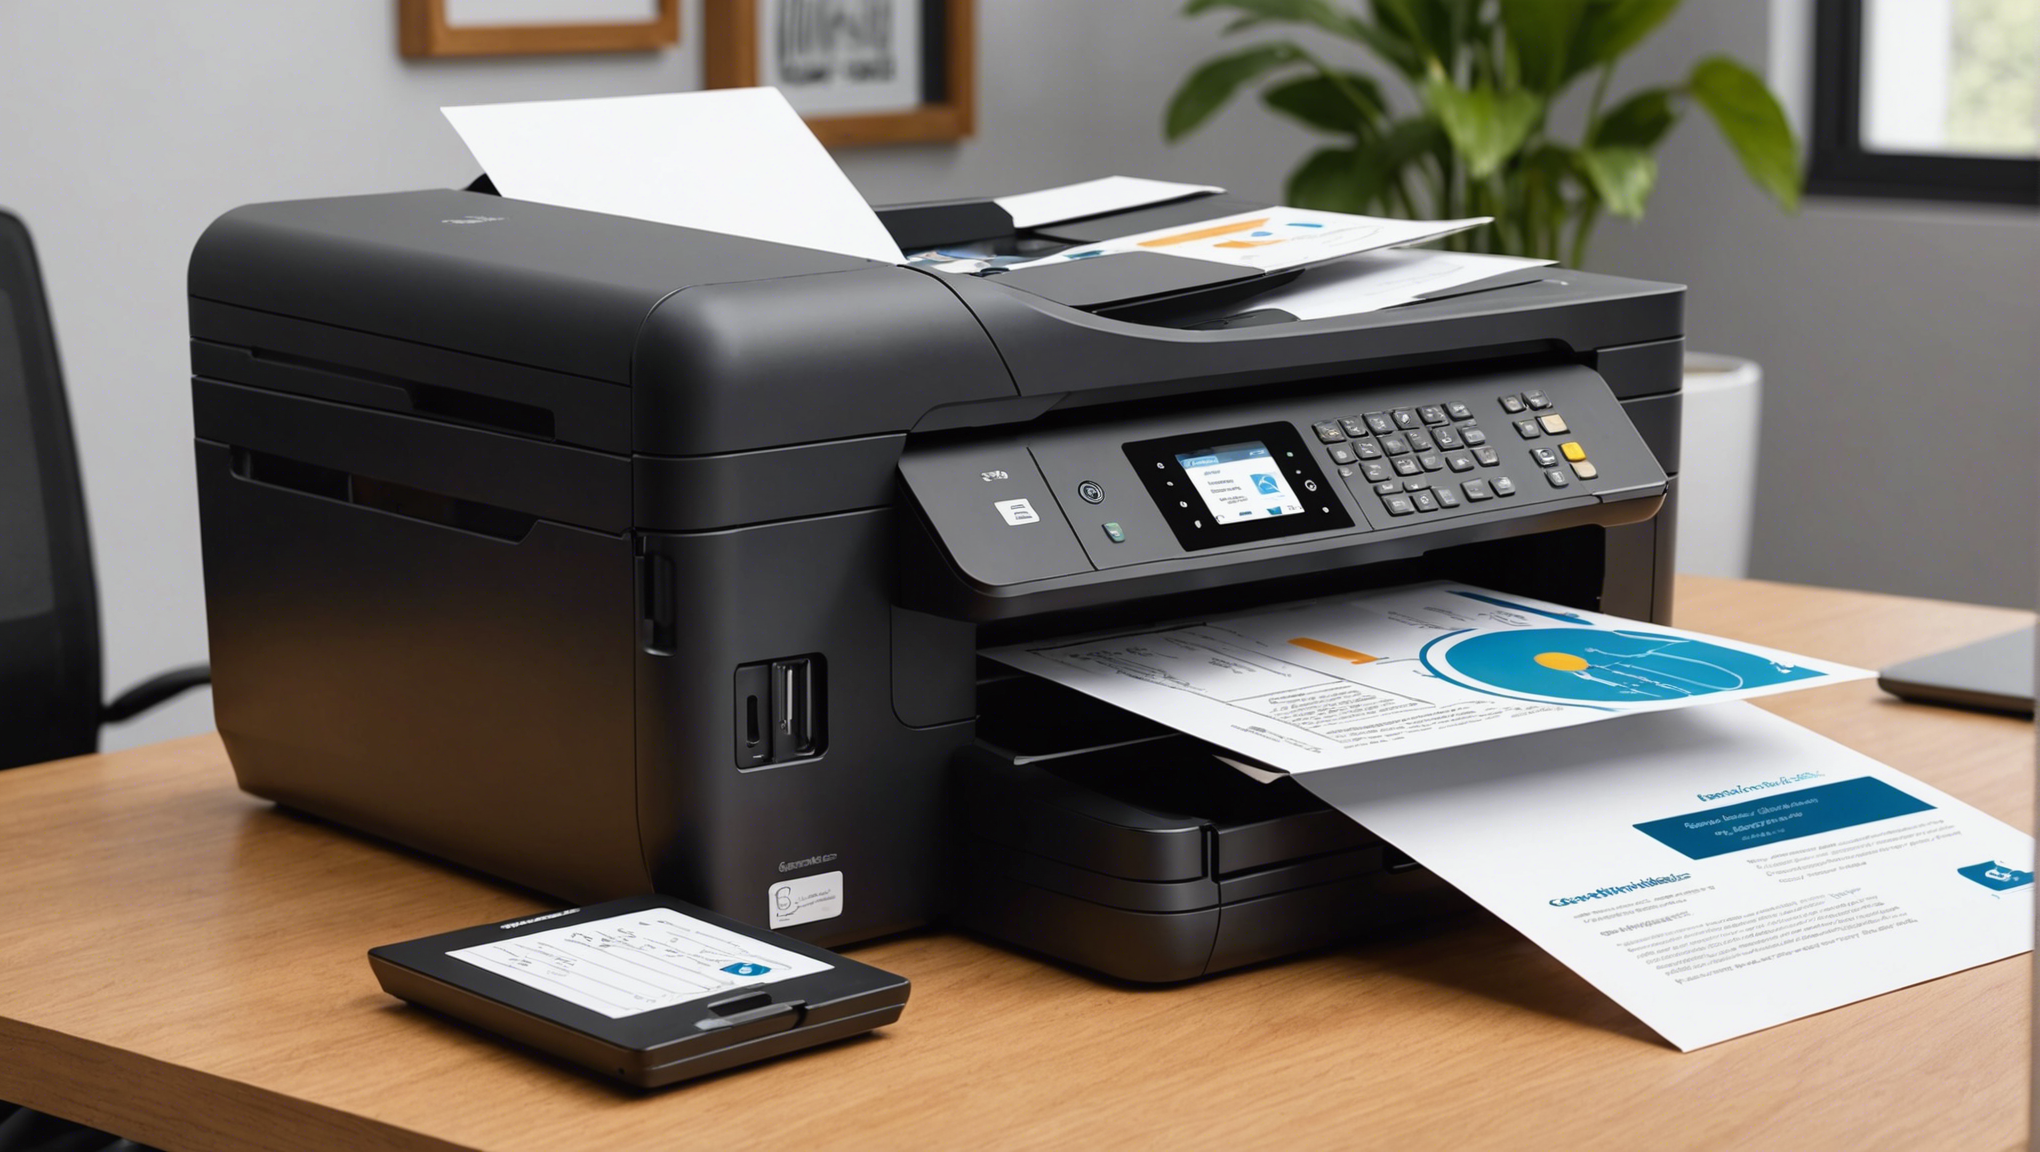 découvrez notre guide d'achat pour choisir une imprimante professionnelle abordable qui répond à vos besoins. trouvez des conseils pour acheter une imprimante professionnelle de qualité à prix abordable.